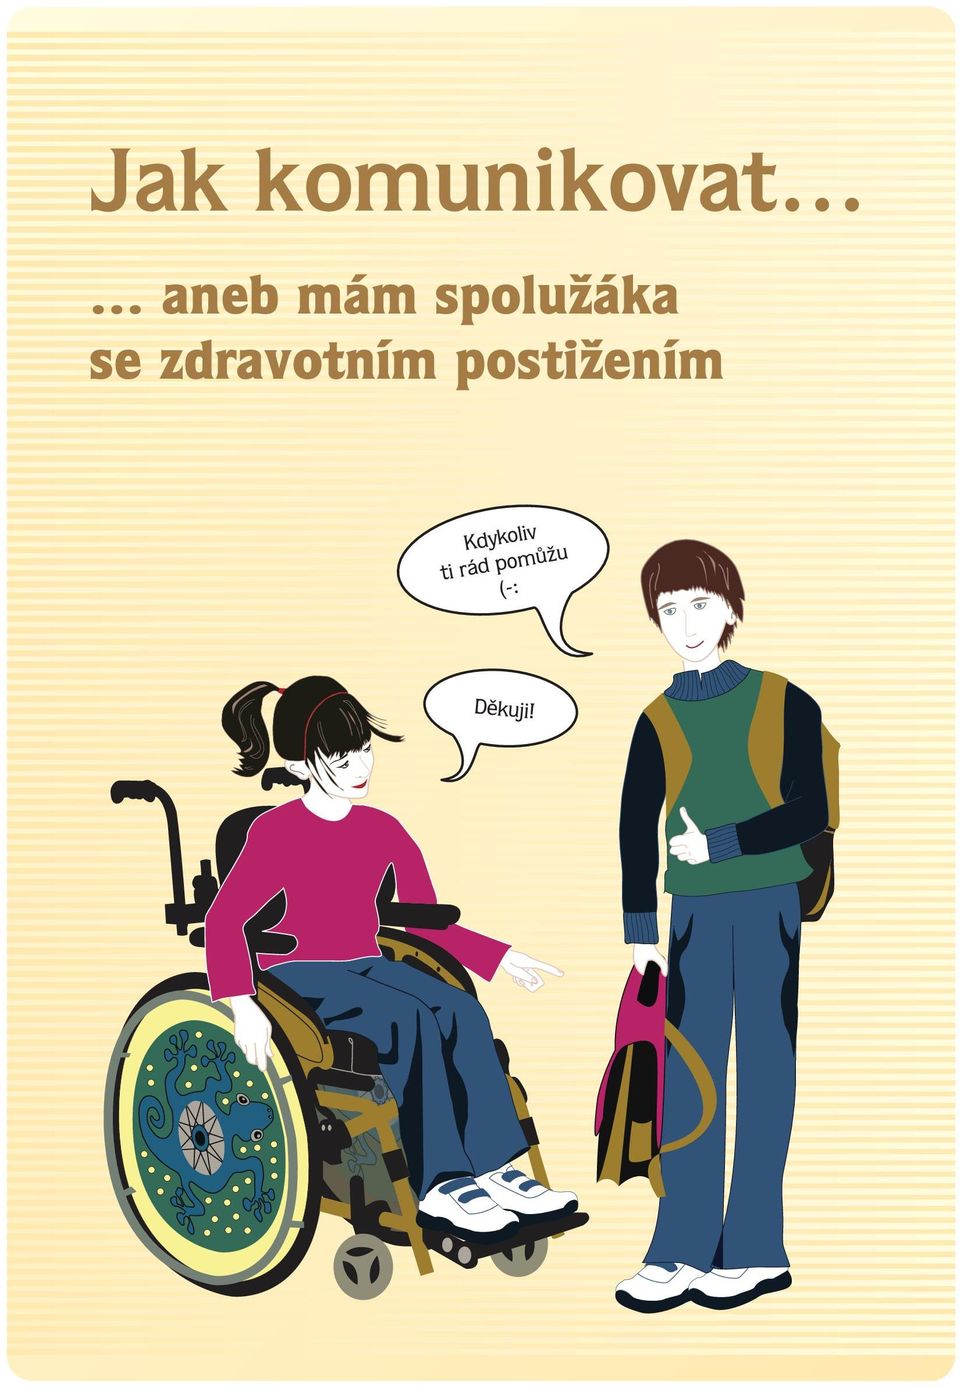 zdravotním postižením